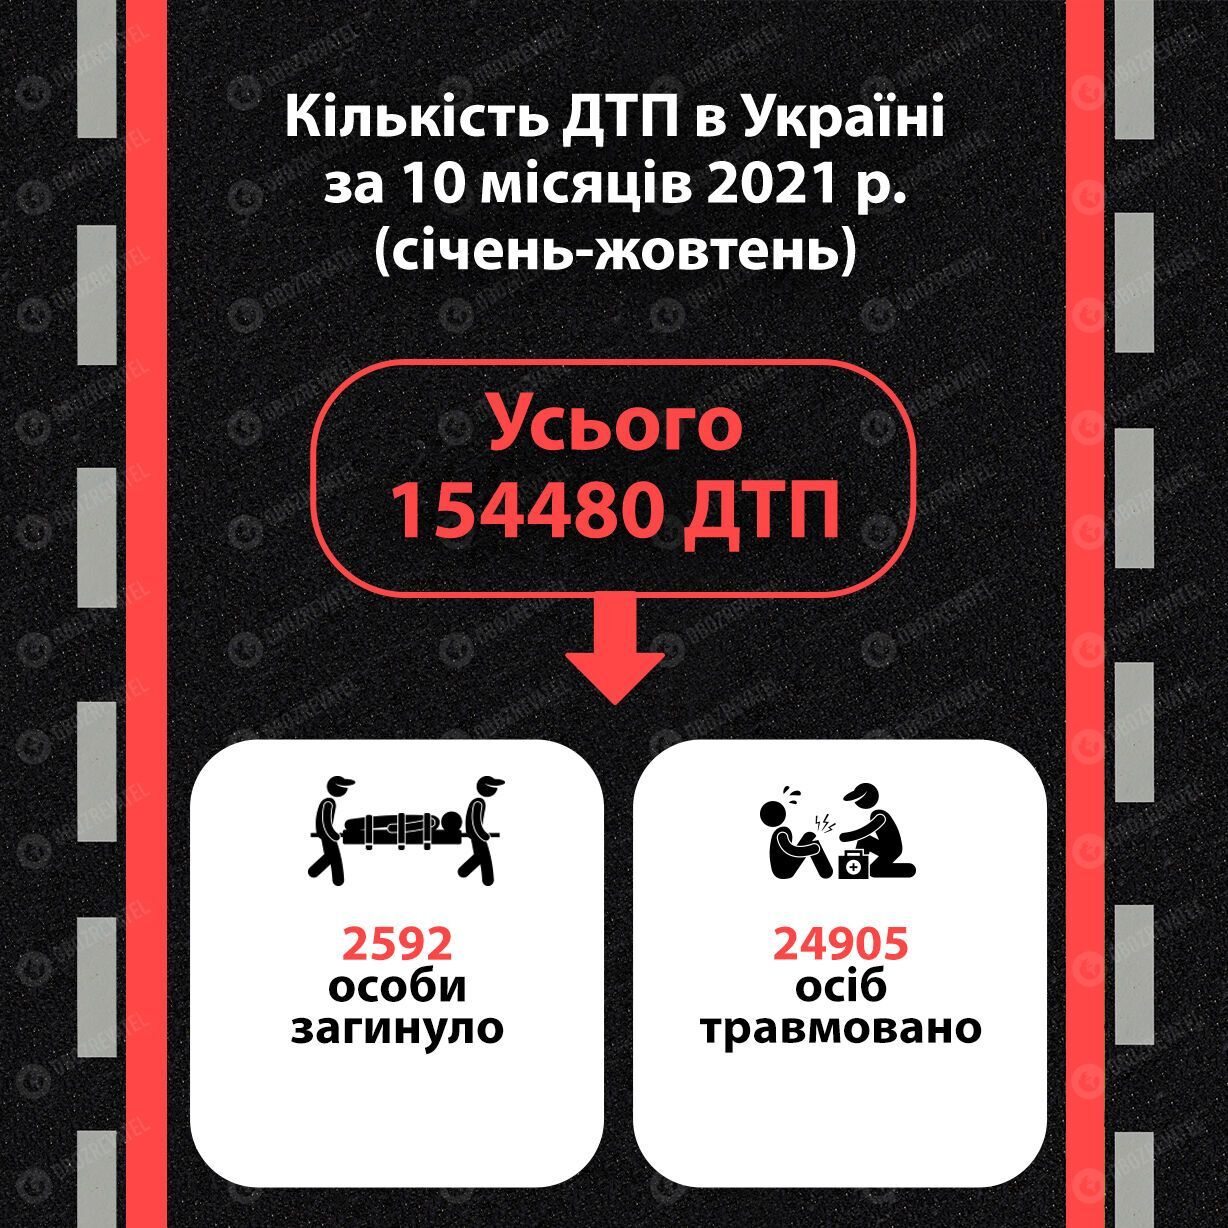 Статистика ДТП в Україні 2021 .